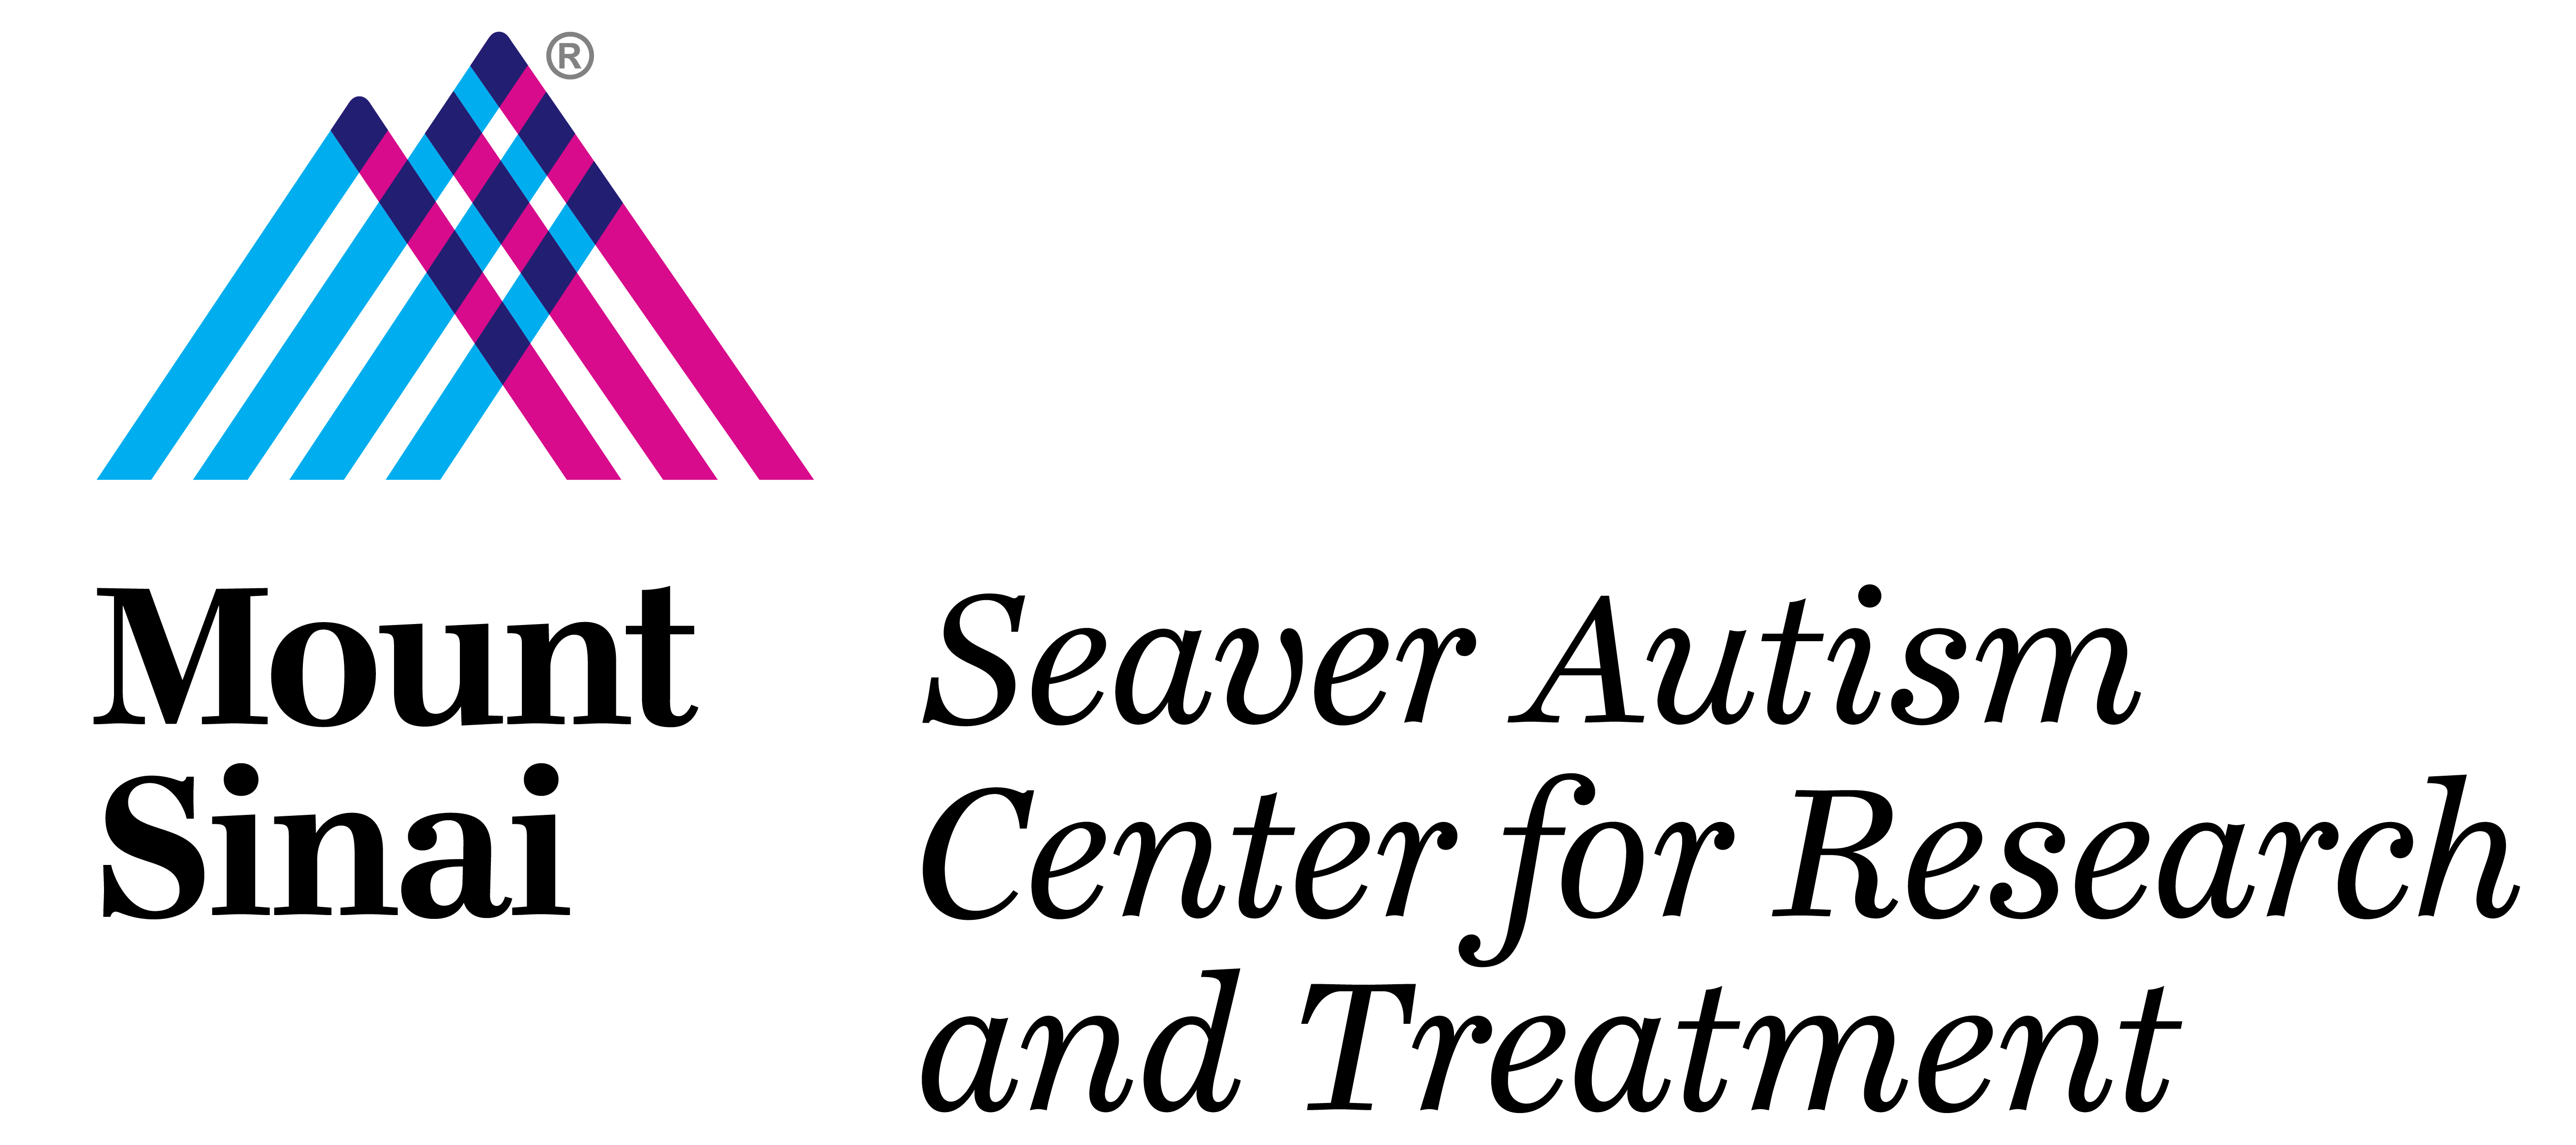 4 Seaver Autism Center